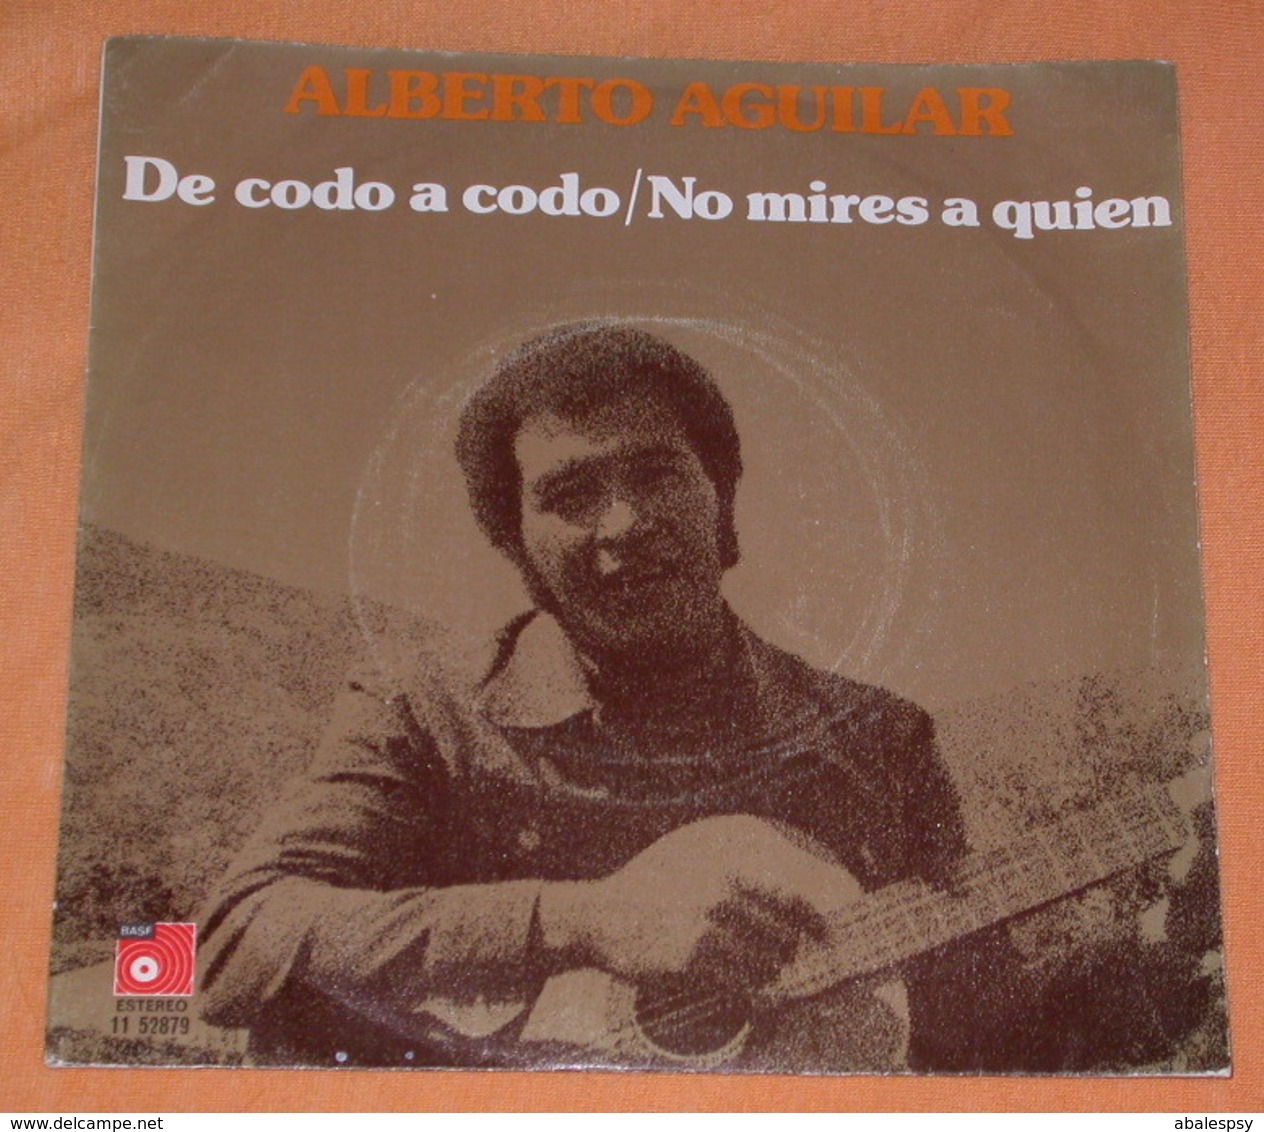 Alberto Aguilar 45t De Codo A Codo / No Mires A Quien (BAS 1975 Spain) Dedicace VG+ M - Other - Spanish Music